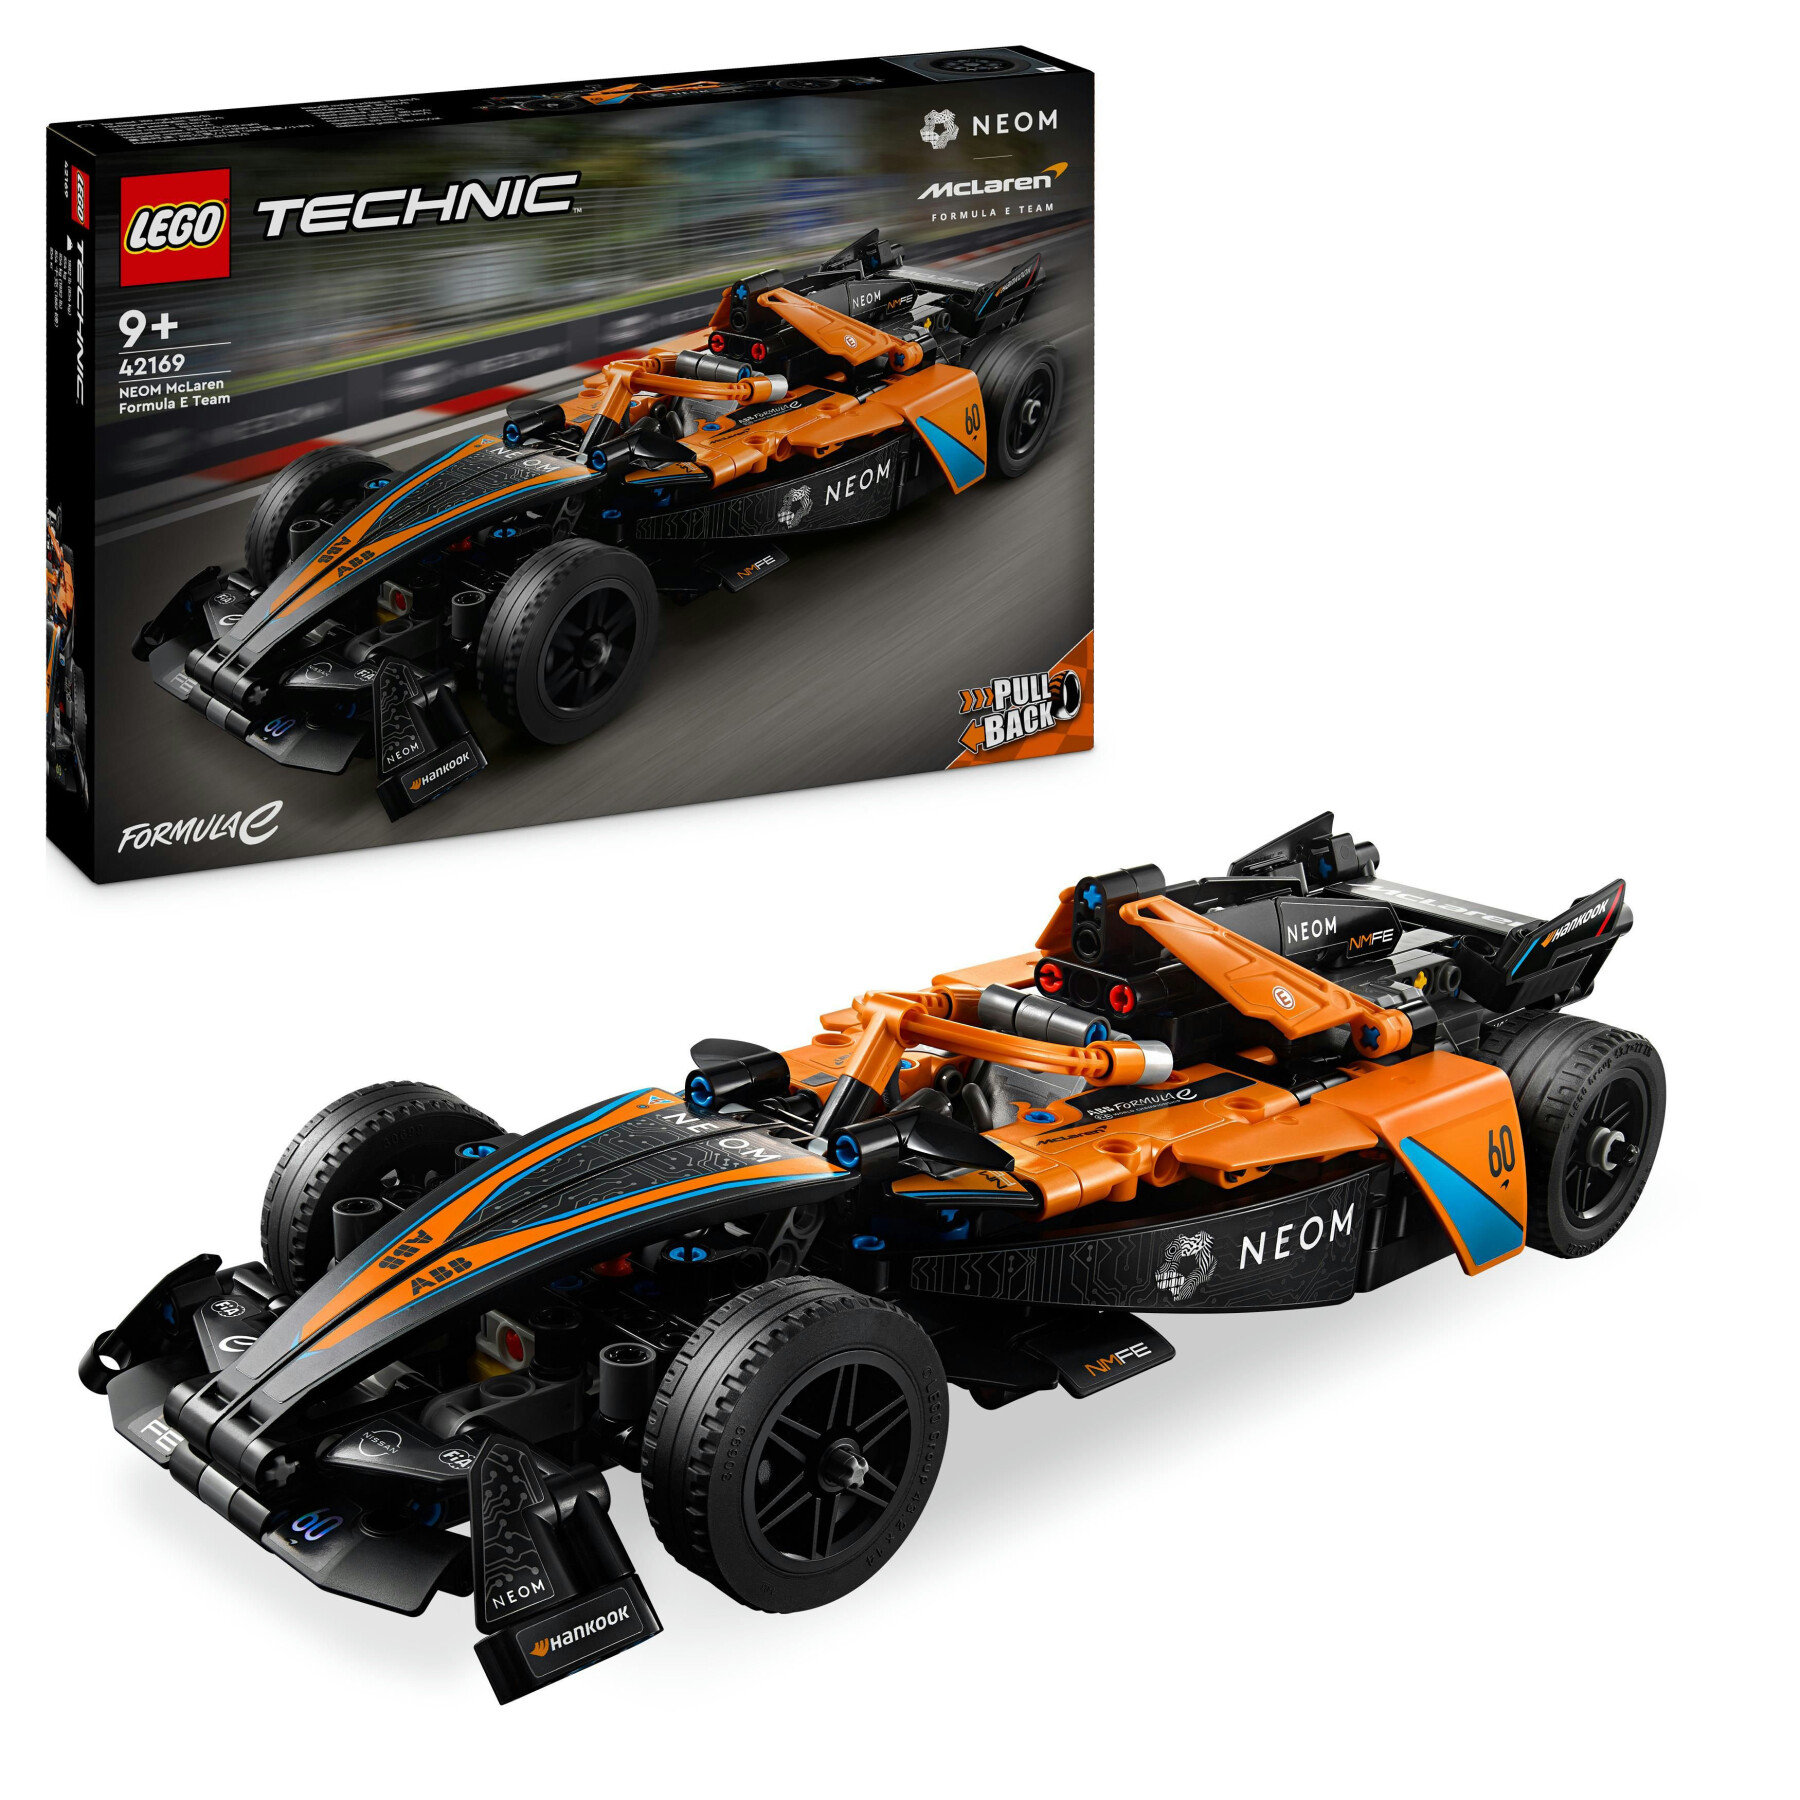 Lego technic 42169 neom mclaren formula e race car, macchina giocattolo per bambini 9+, modellino di auto f1 da costruire - LEGO TECHNIC